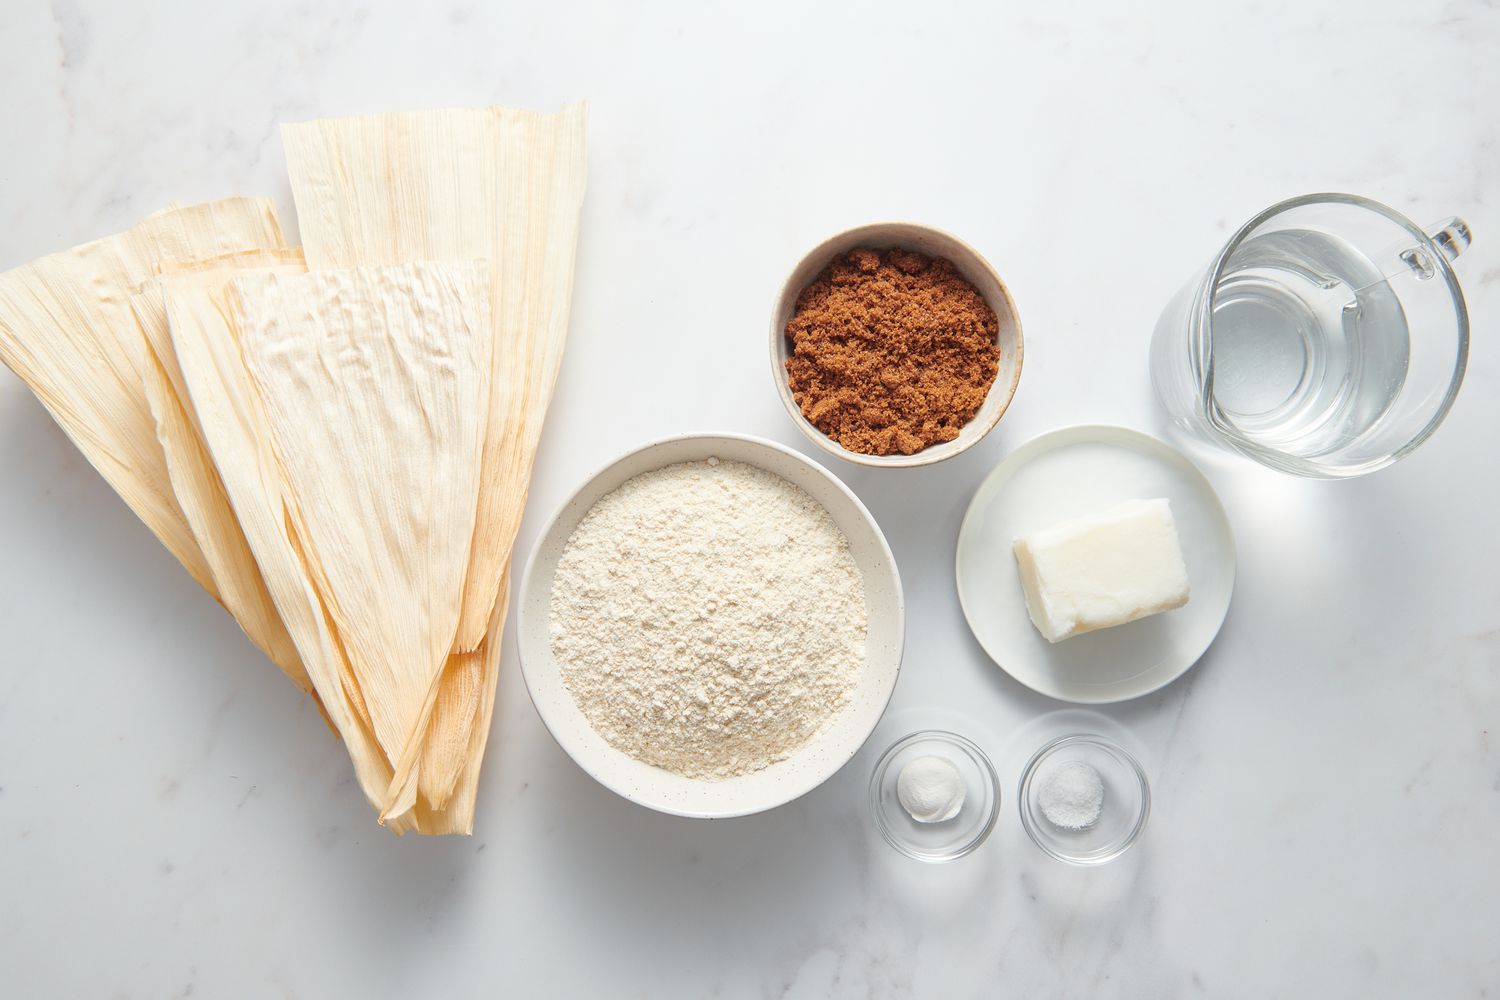 Ingredients to make tamale dough